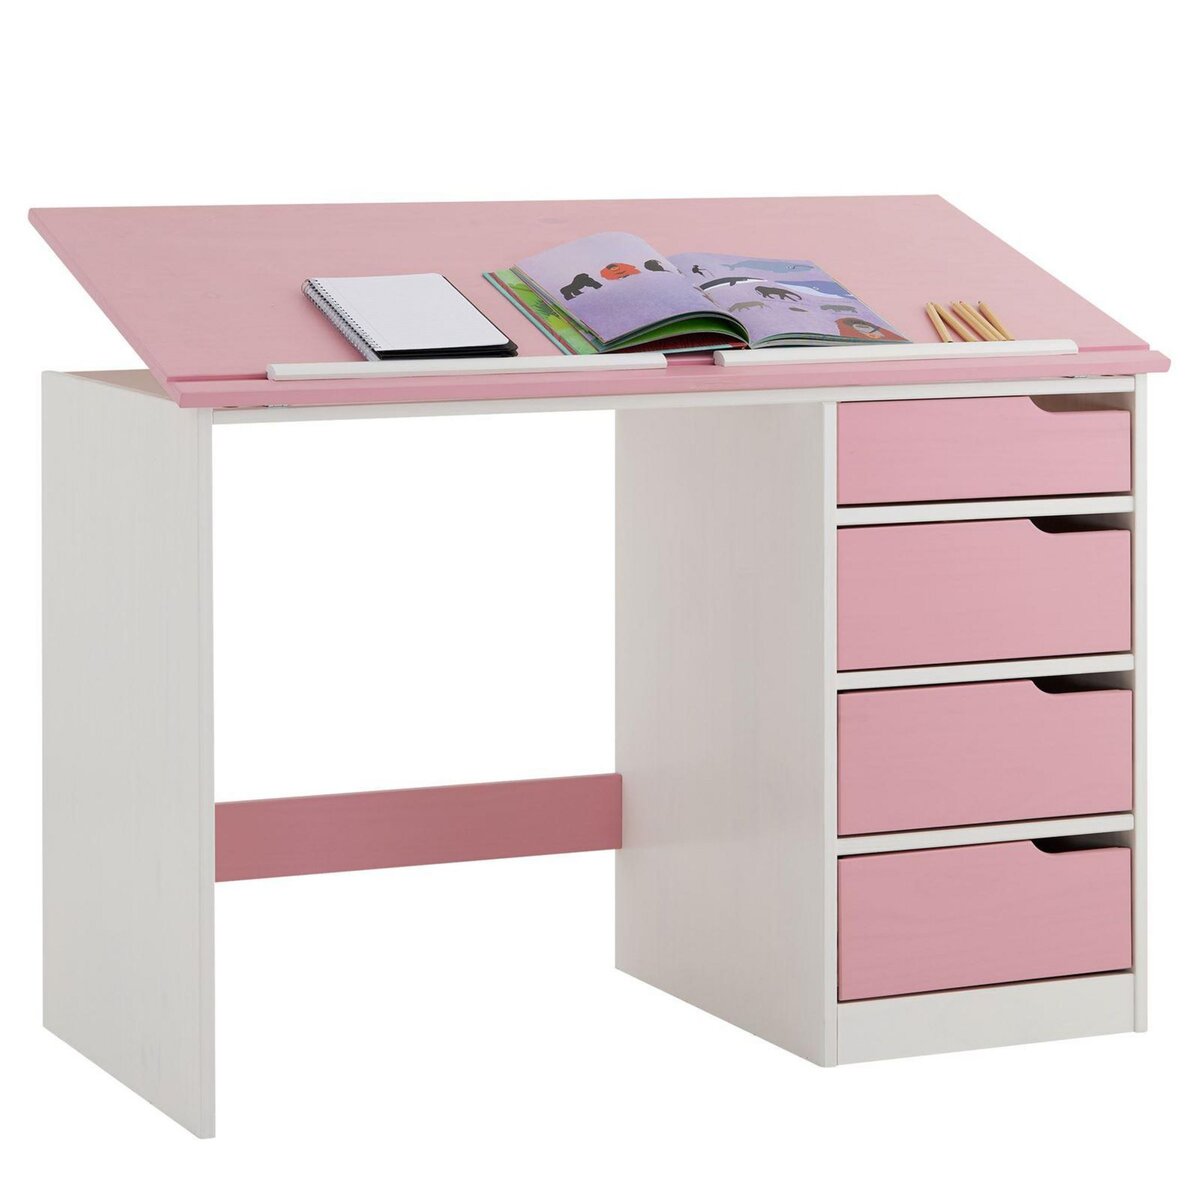 IDIMEX Bureau enfant écolier junior EMMA pupitre inclinable avec 4 tiroirs en pin massif, lasuré blanc et rose